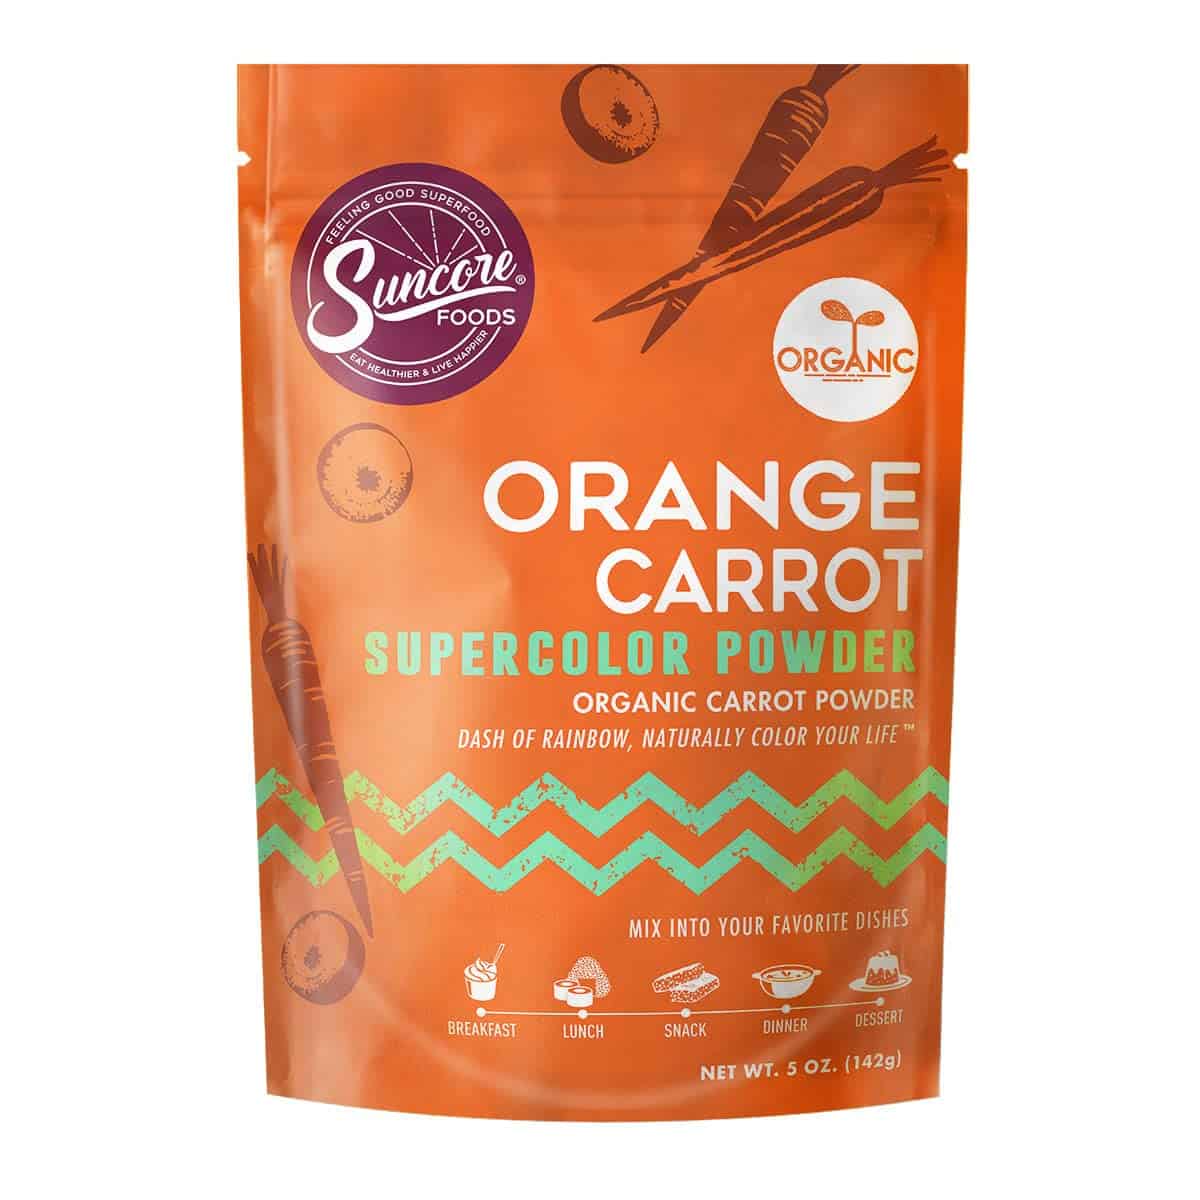 Carrot powder as a good substitute for annatto powder